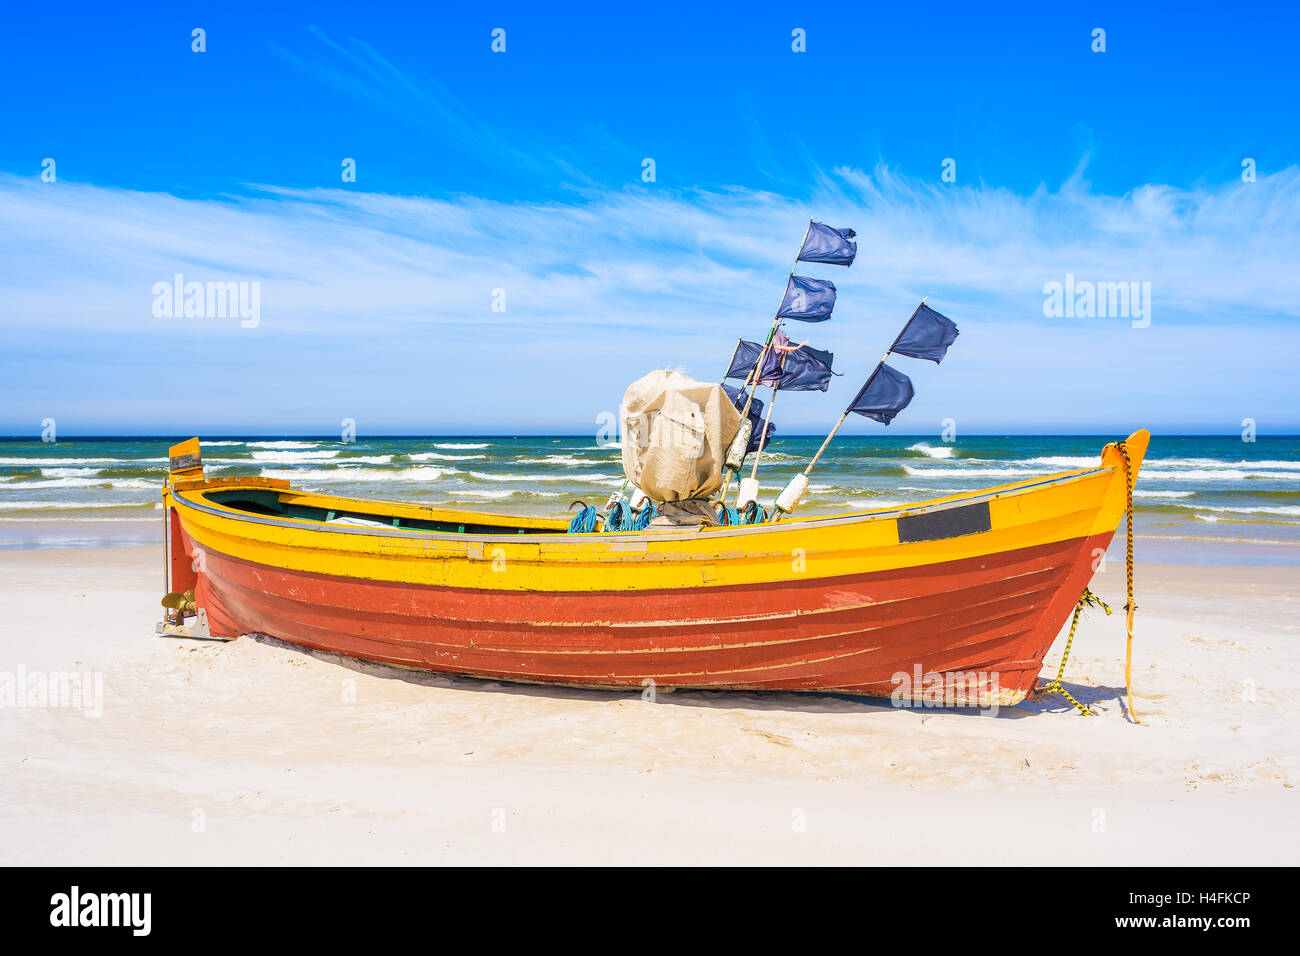 Bateau de pêche colorés sur la plage de sable de la mer Baltique, Pologne Banque D'Images